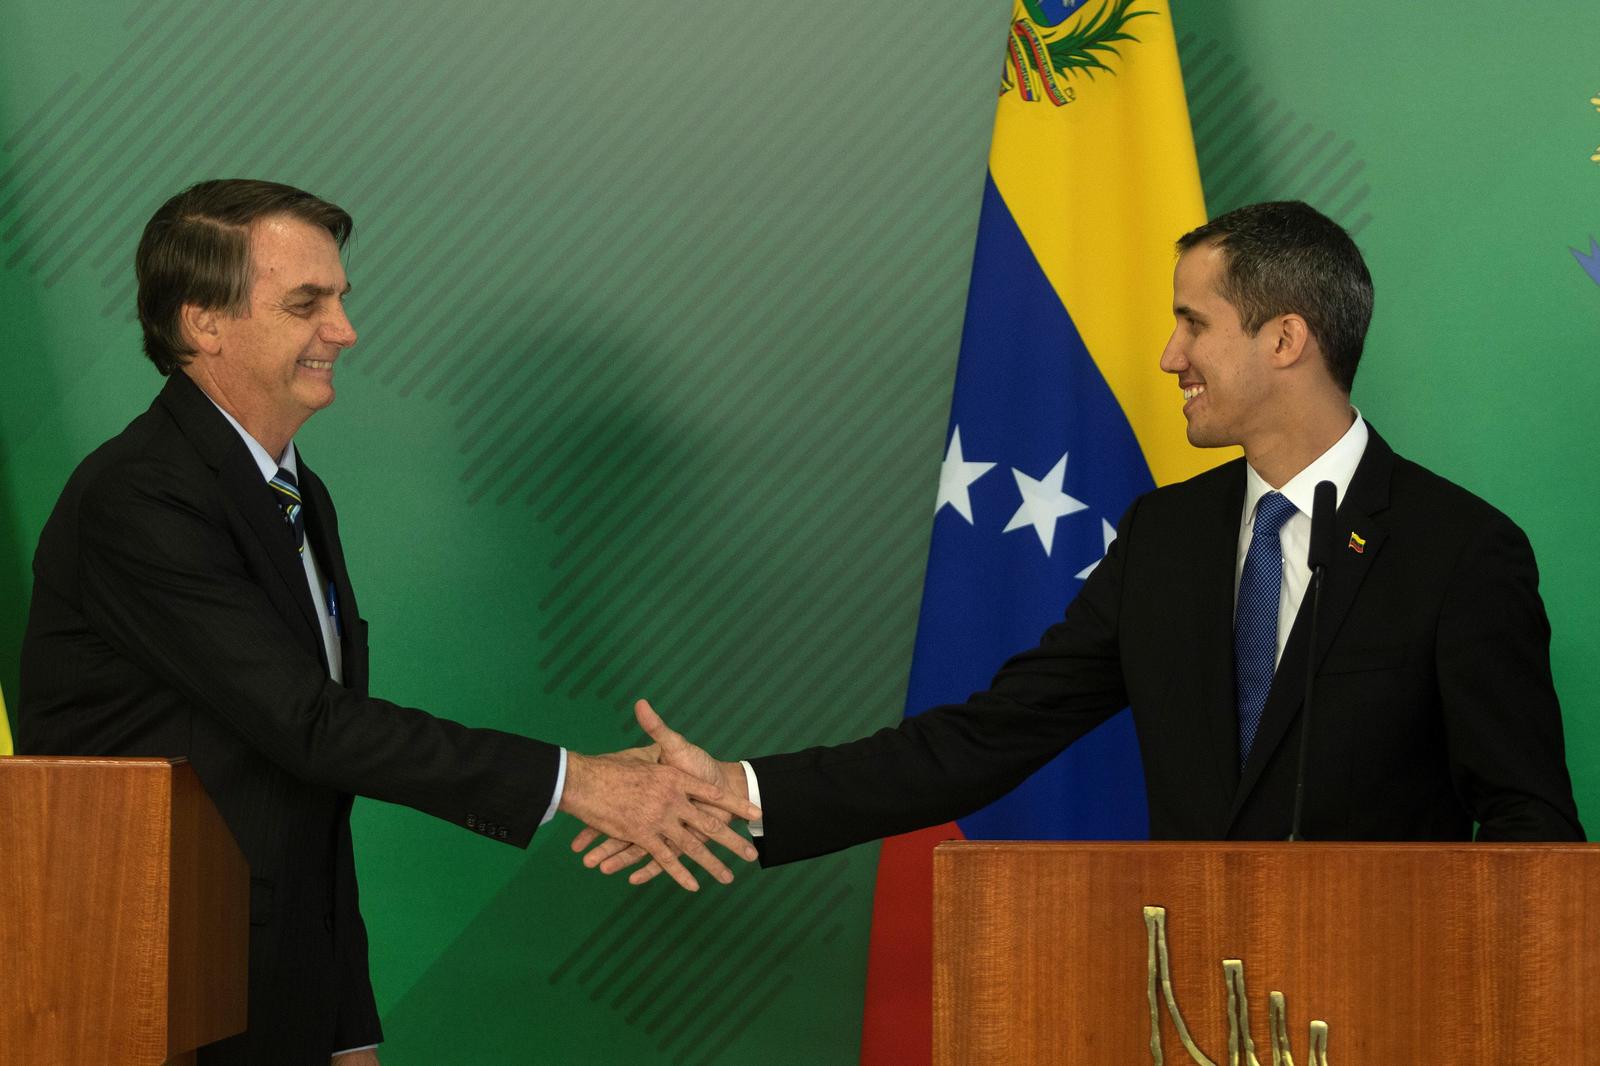 El presidente de Brasil, Jair Bolsonao (Izq.), saluda al jefe de la Asamblea Nacional de Venezuela, Juan Gauidó (Der.), durante un pronunciamiento conjunto tras una reunión privada ayer.